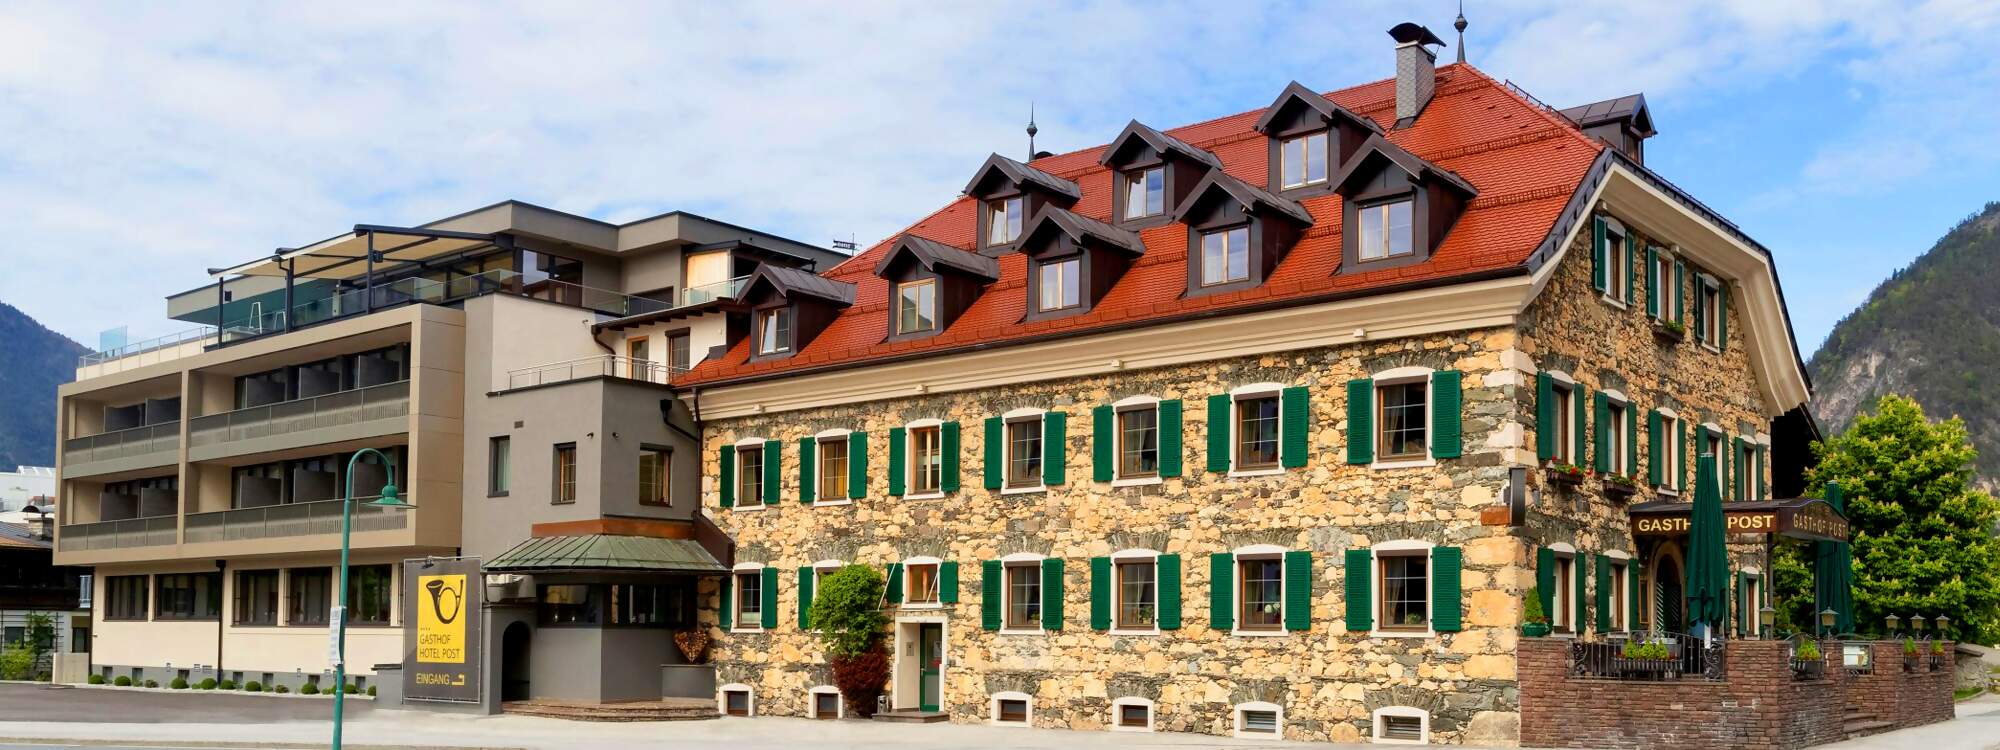 Gasthof Hotel Post | Strass - Das Auge isst mit. Das gilt nicht nur für unsere Tiroler Genussschmankerln, sondern auch für unsere gemütlichen Stuben in unserem Restaurant und unsere Post Terrassen.